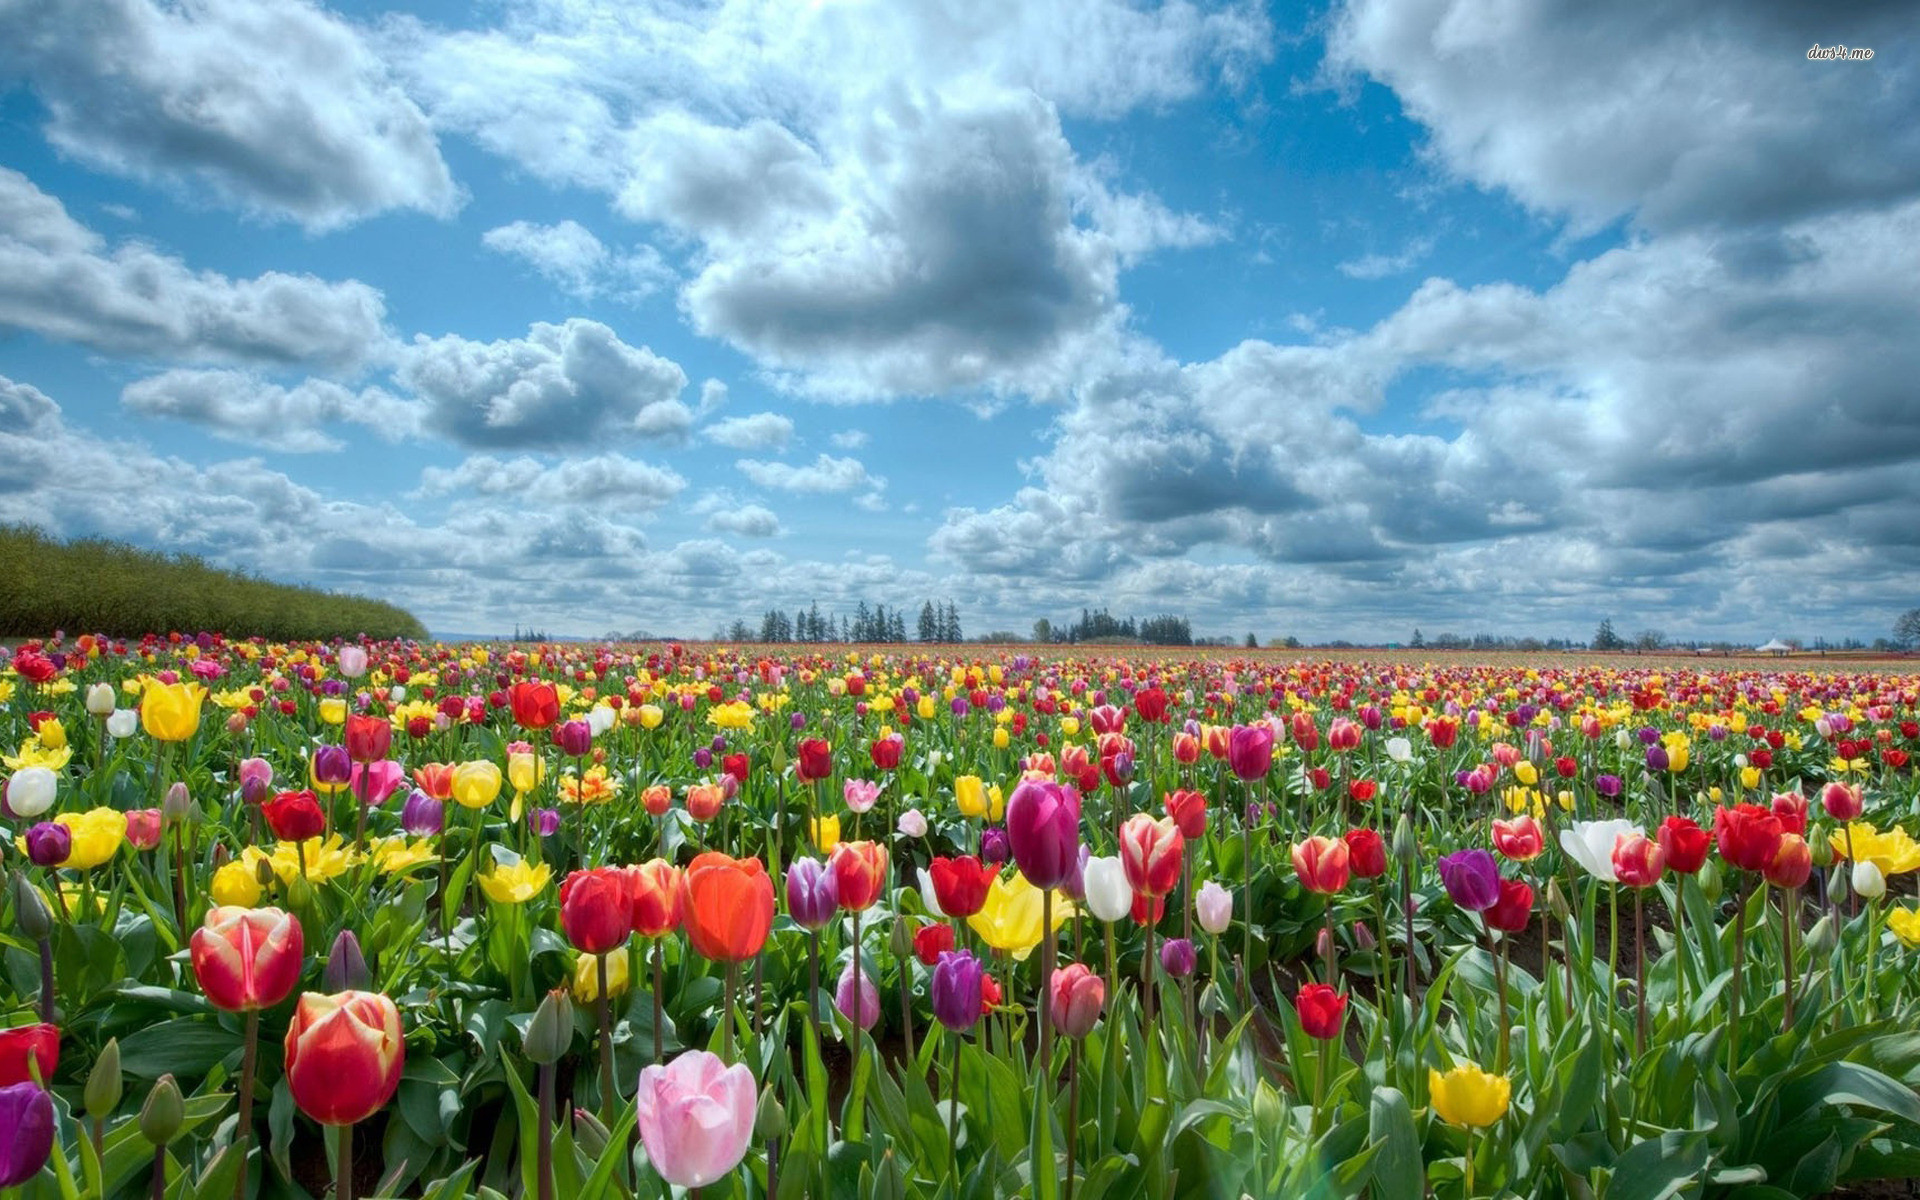 Hoa tulip: Bạn đã bao giờ cảm nhận được sự ngọt ngào của loài hoa tulip chưa? Hãy nhìn vào hình ảnh này để tận hưởng cảm giác đó. Màu sắc tươi sáng, những cánh hoa đầy tinh tế sẽ khiến bạn say đắm.